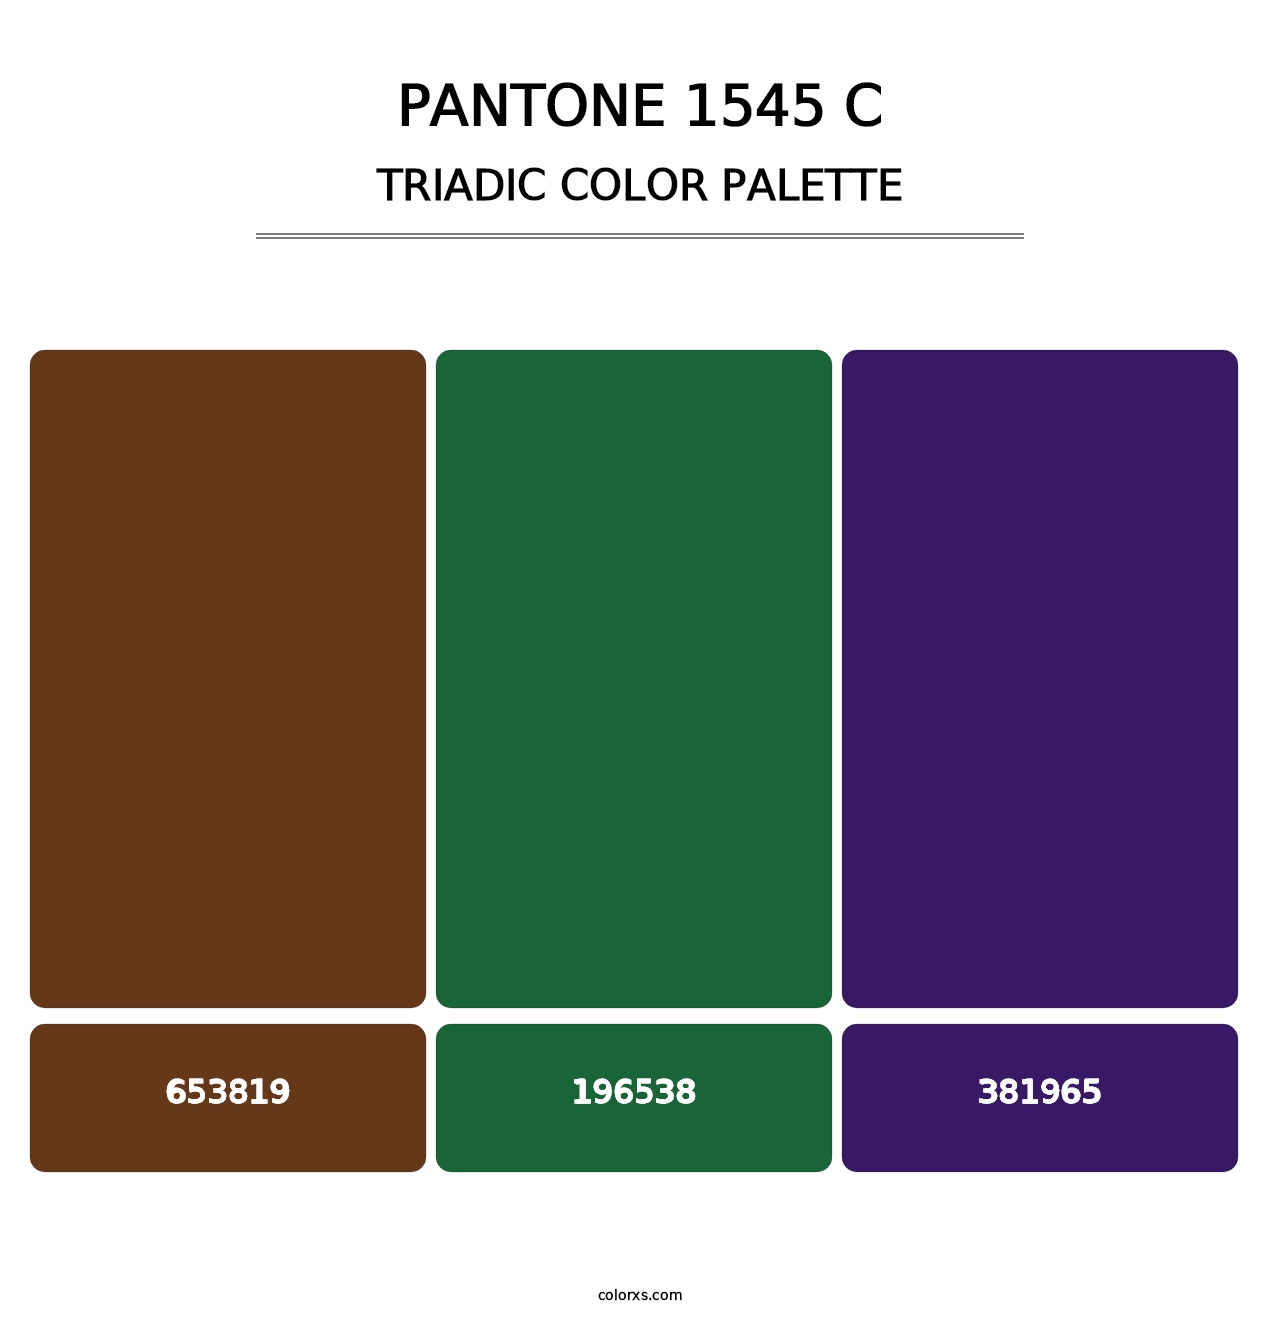 PANTONE 1545 C - Triadic Color Palette